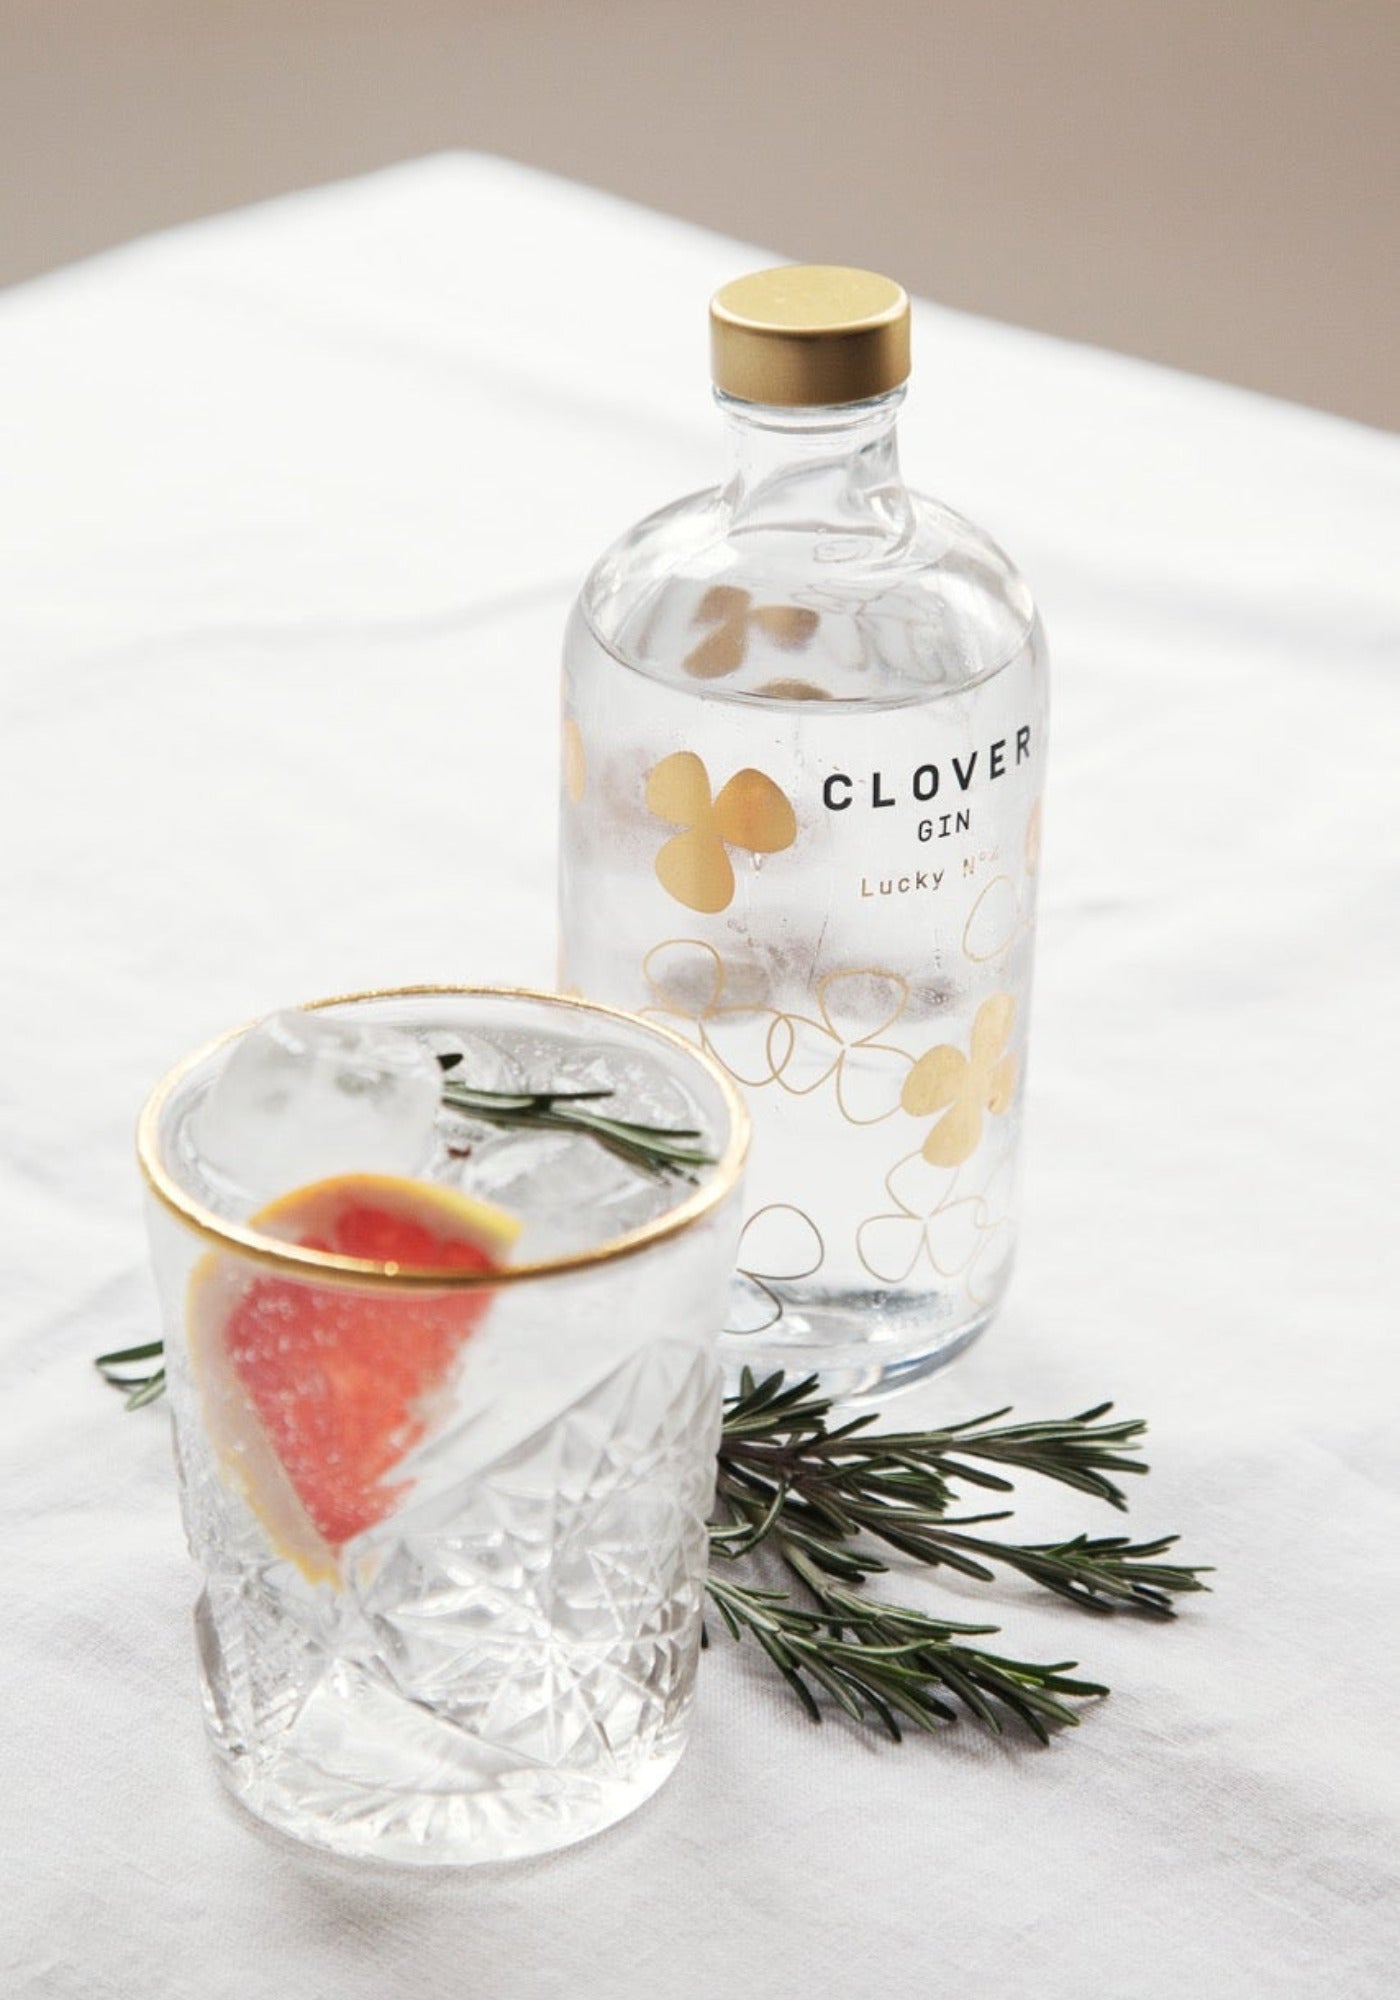 Le verre Hobstar de chez Clover Gin avec le Gin Lucky n°4